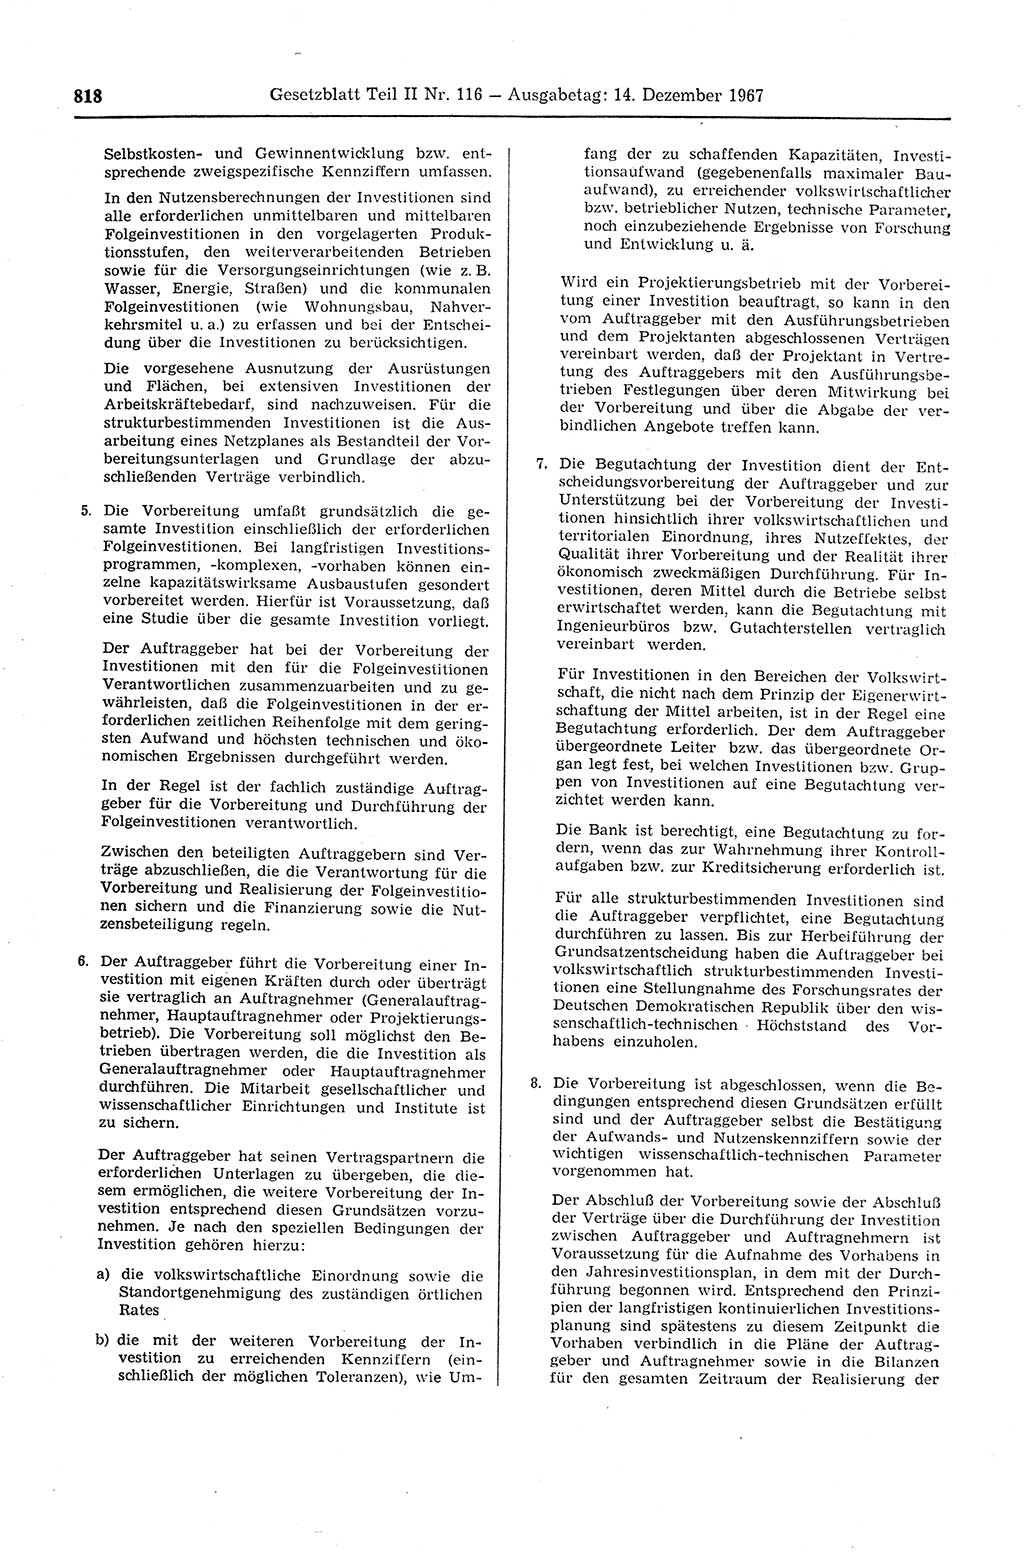 Gesetzblatt (GBl.) der Deutschen Demokratischen Republik (DDR) Teil ⅠⅠ 1967, Seite 818 (GBl. DDR ⅠⅠ 1967, S. 818)